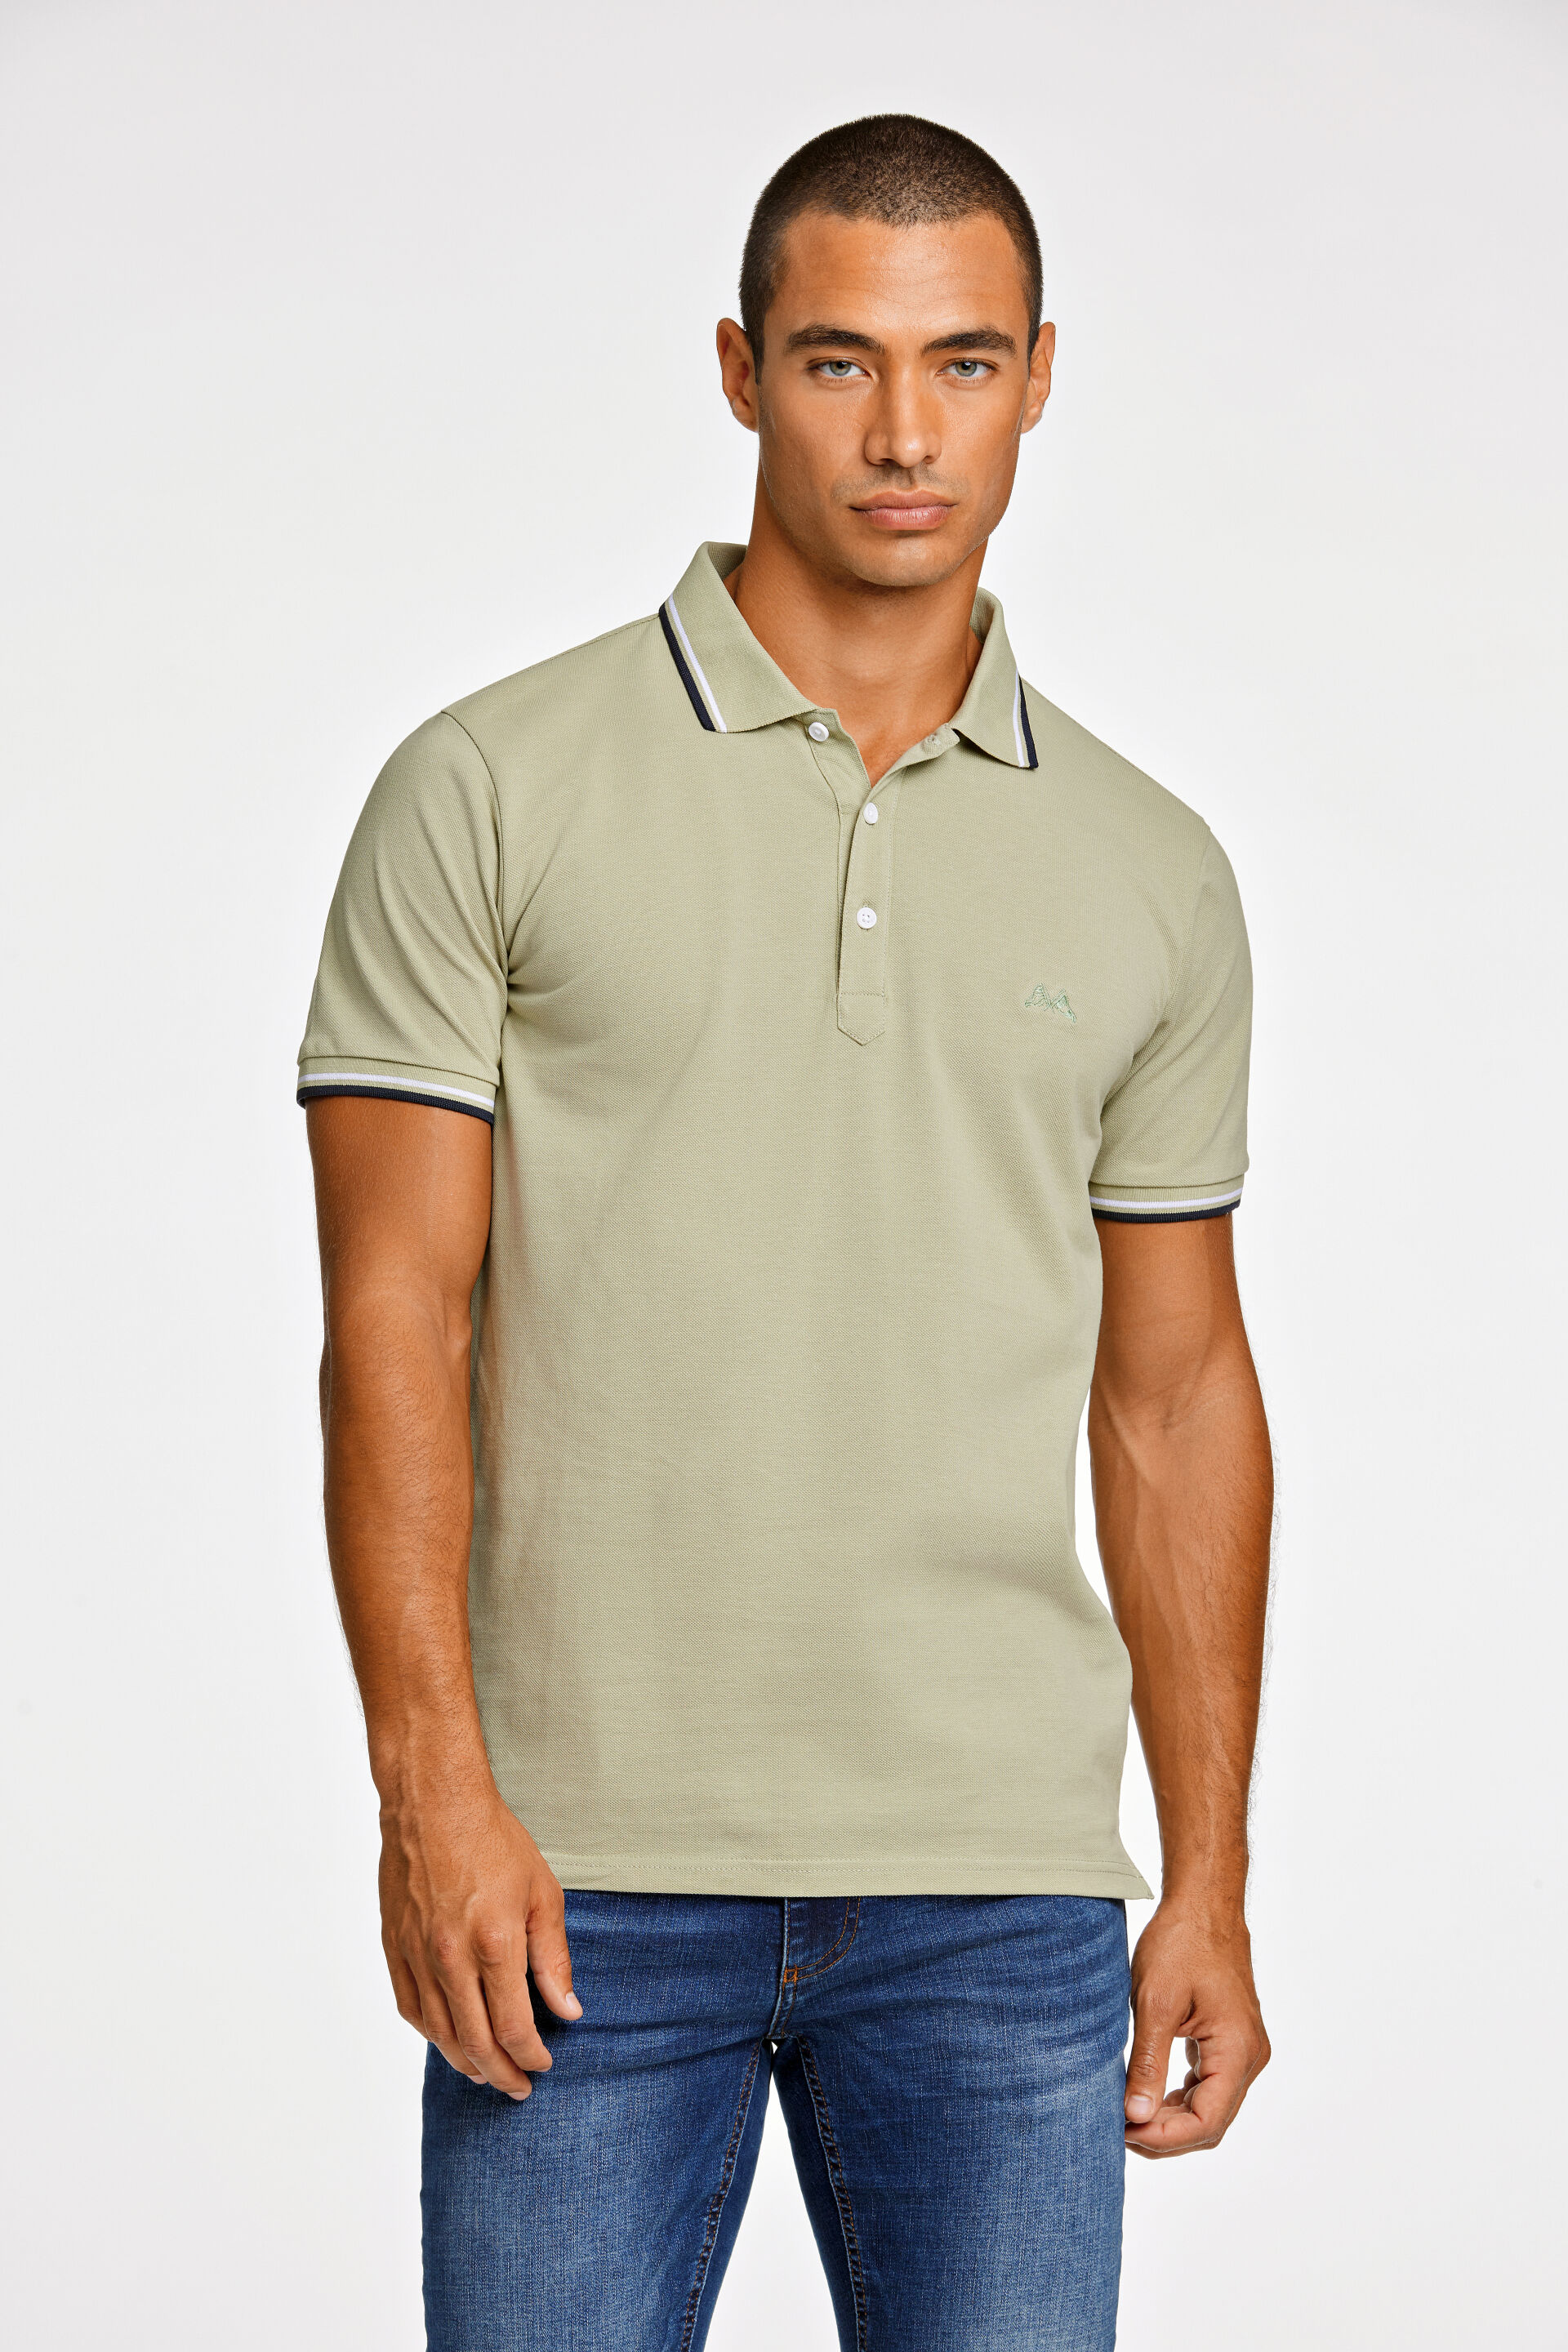 Polo shirt Polo shirt Green 30-404010